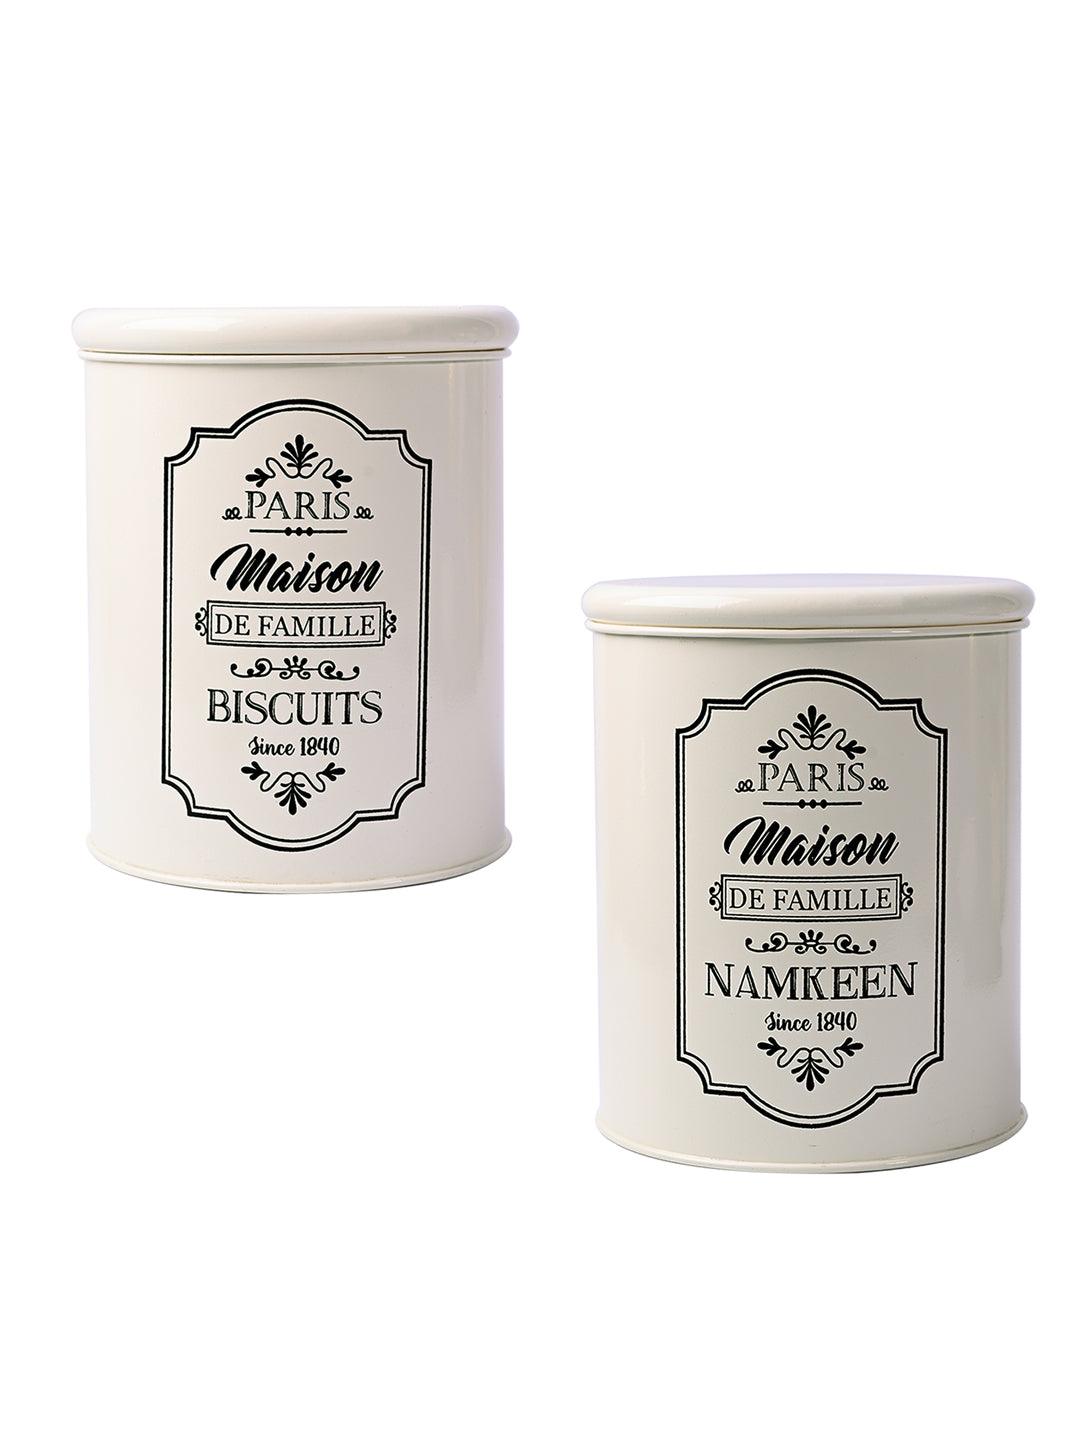 Metal Biscuite & Namkeen Jar Set - Each Ivory & 1700 Ml